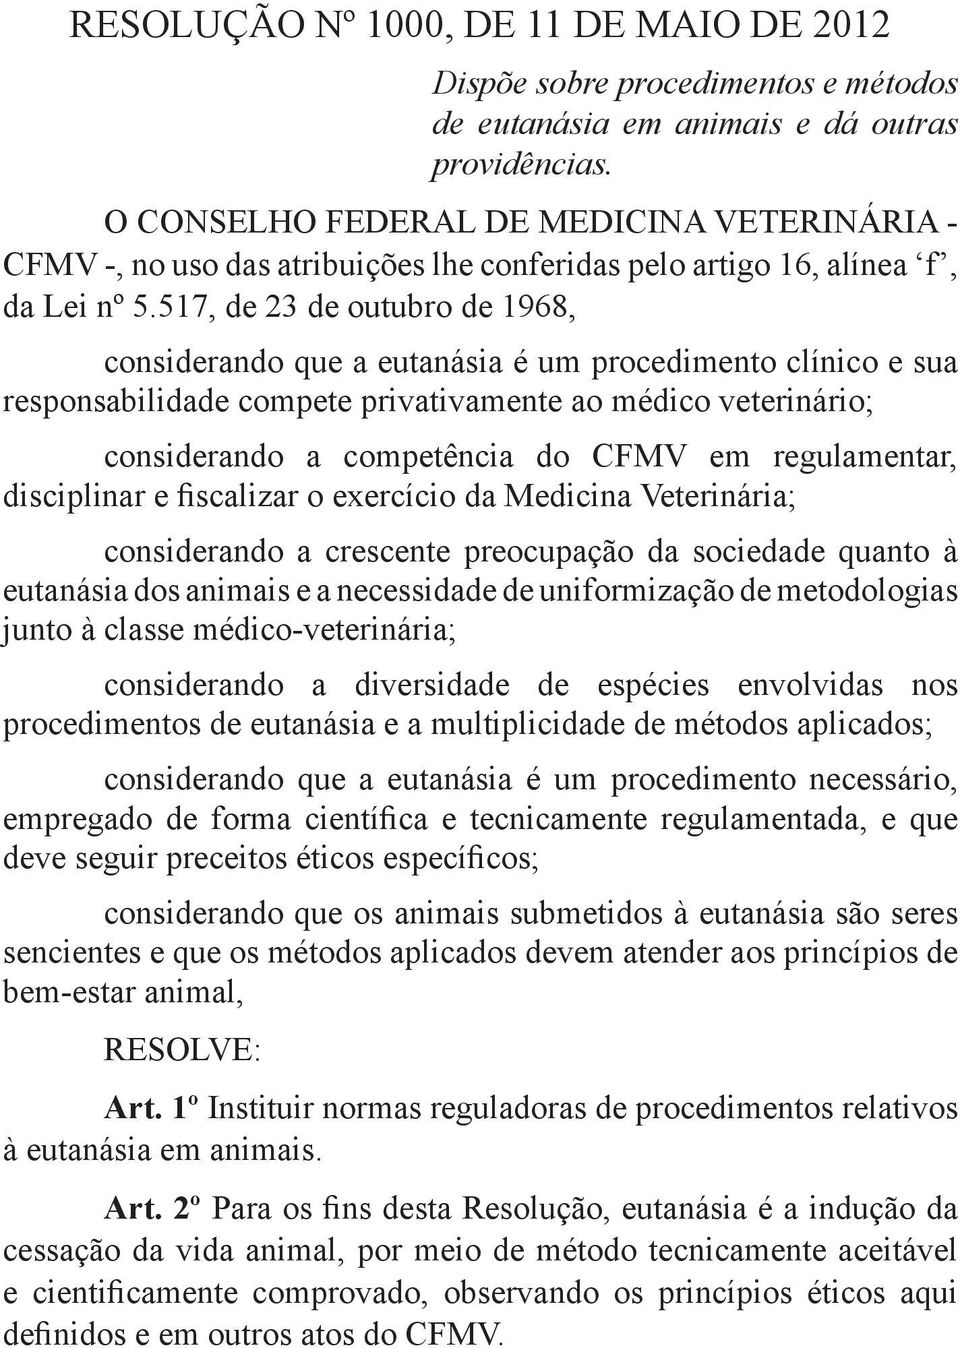 517, de 23 de outubro de 1968, considerando que a eutanásia é um procedimento clínico e sua responsabilidade compete privativamente ao médico veterinário; considerando a competência do CFMV em